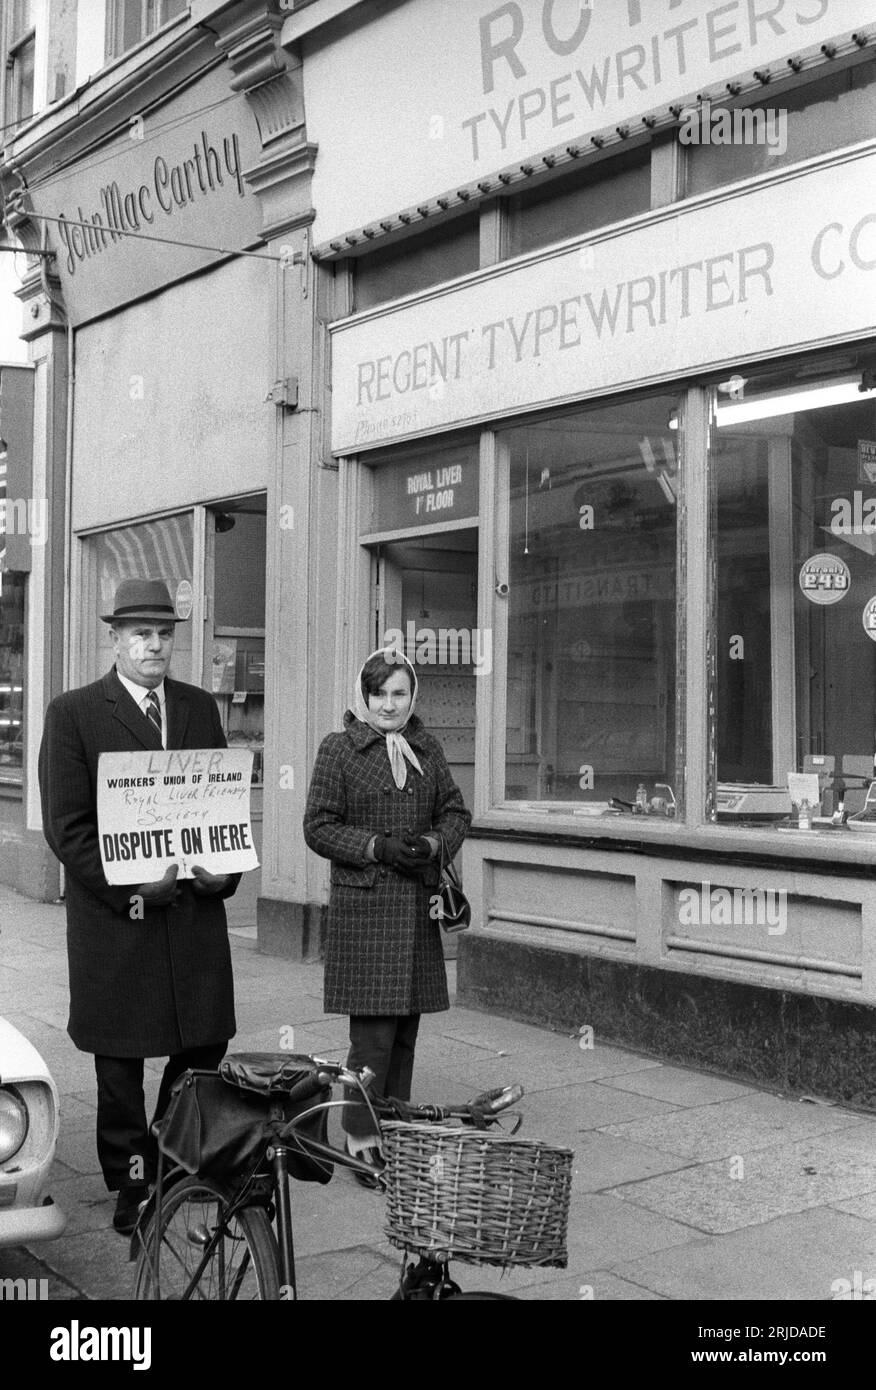 En grève, Picket Line. Deux personnes en grève devant leur bureau qui se trouve au premier étage au-dessus de l'atelier de machines à écrire. La pancarte dit "FOIE, la Royal Liver friendly Society. Workers Union of Ireland, DISPUTE ICI." Killorglin, Eire, Irlande du Sud vers 1972. HOMER SYKES Banque D'Images